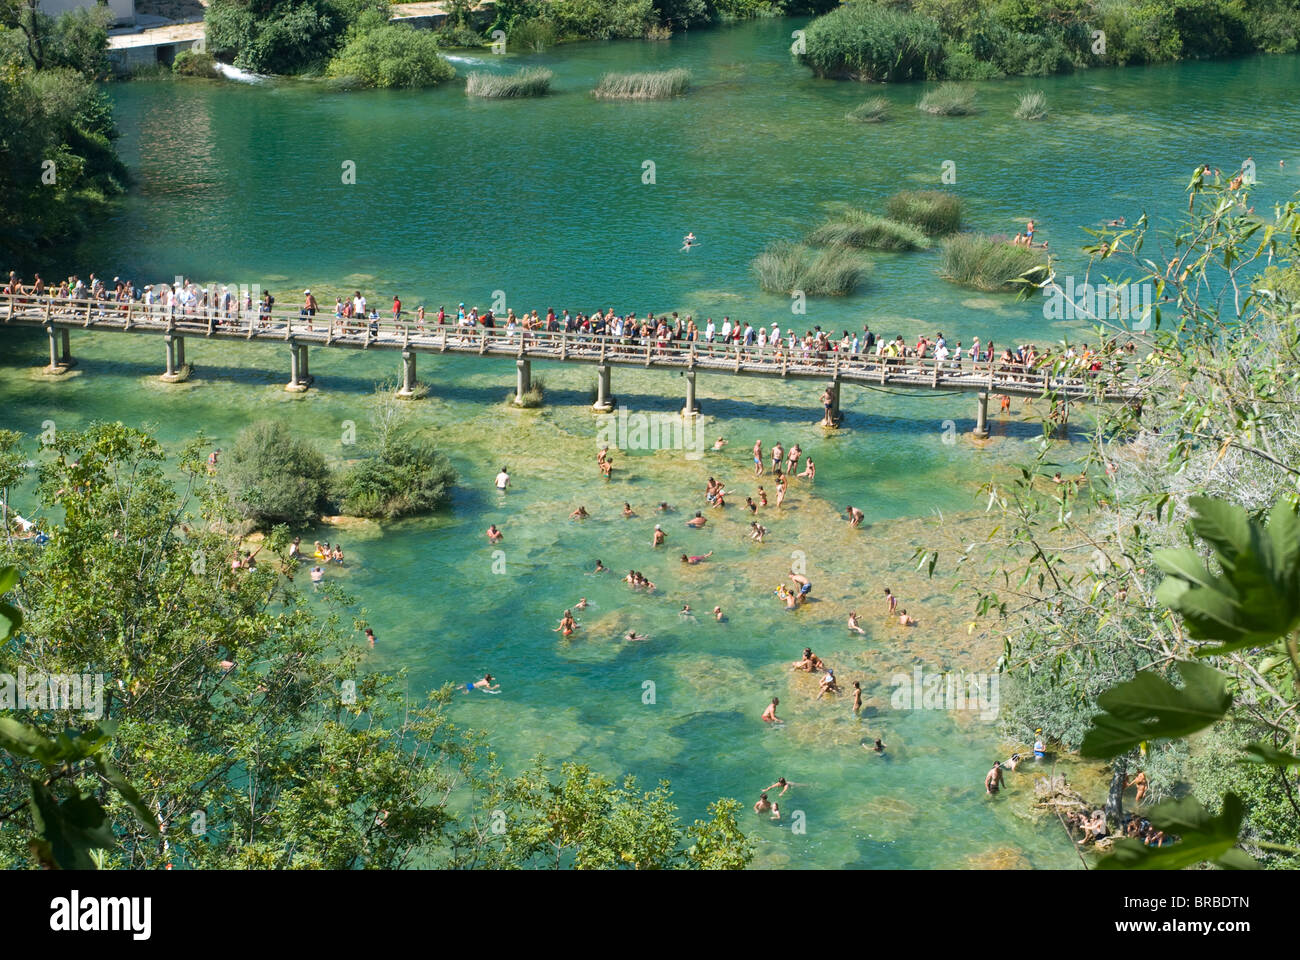 Pont avec de nombreux touristes au-dessus de l'eau turquoise dans le Parc National de Krka, Croatie Banque D'Images